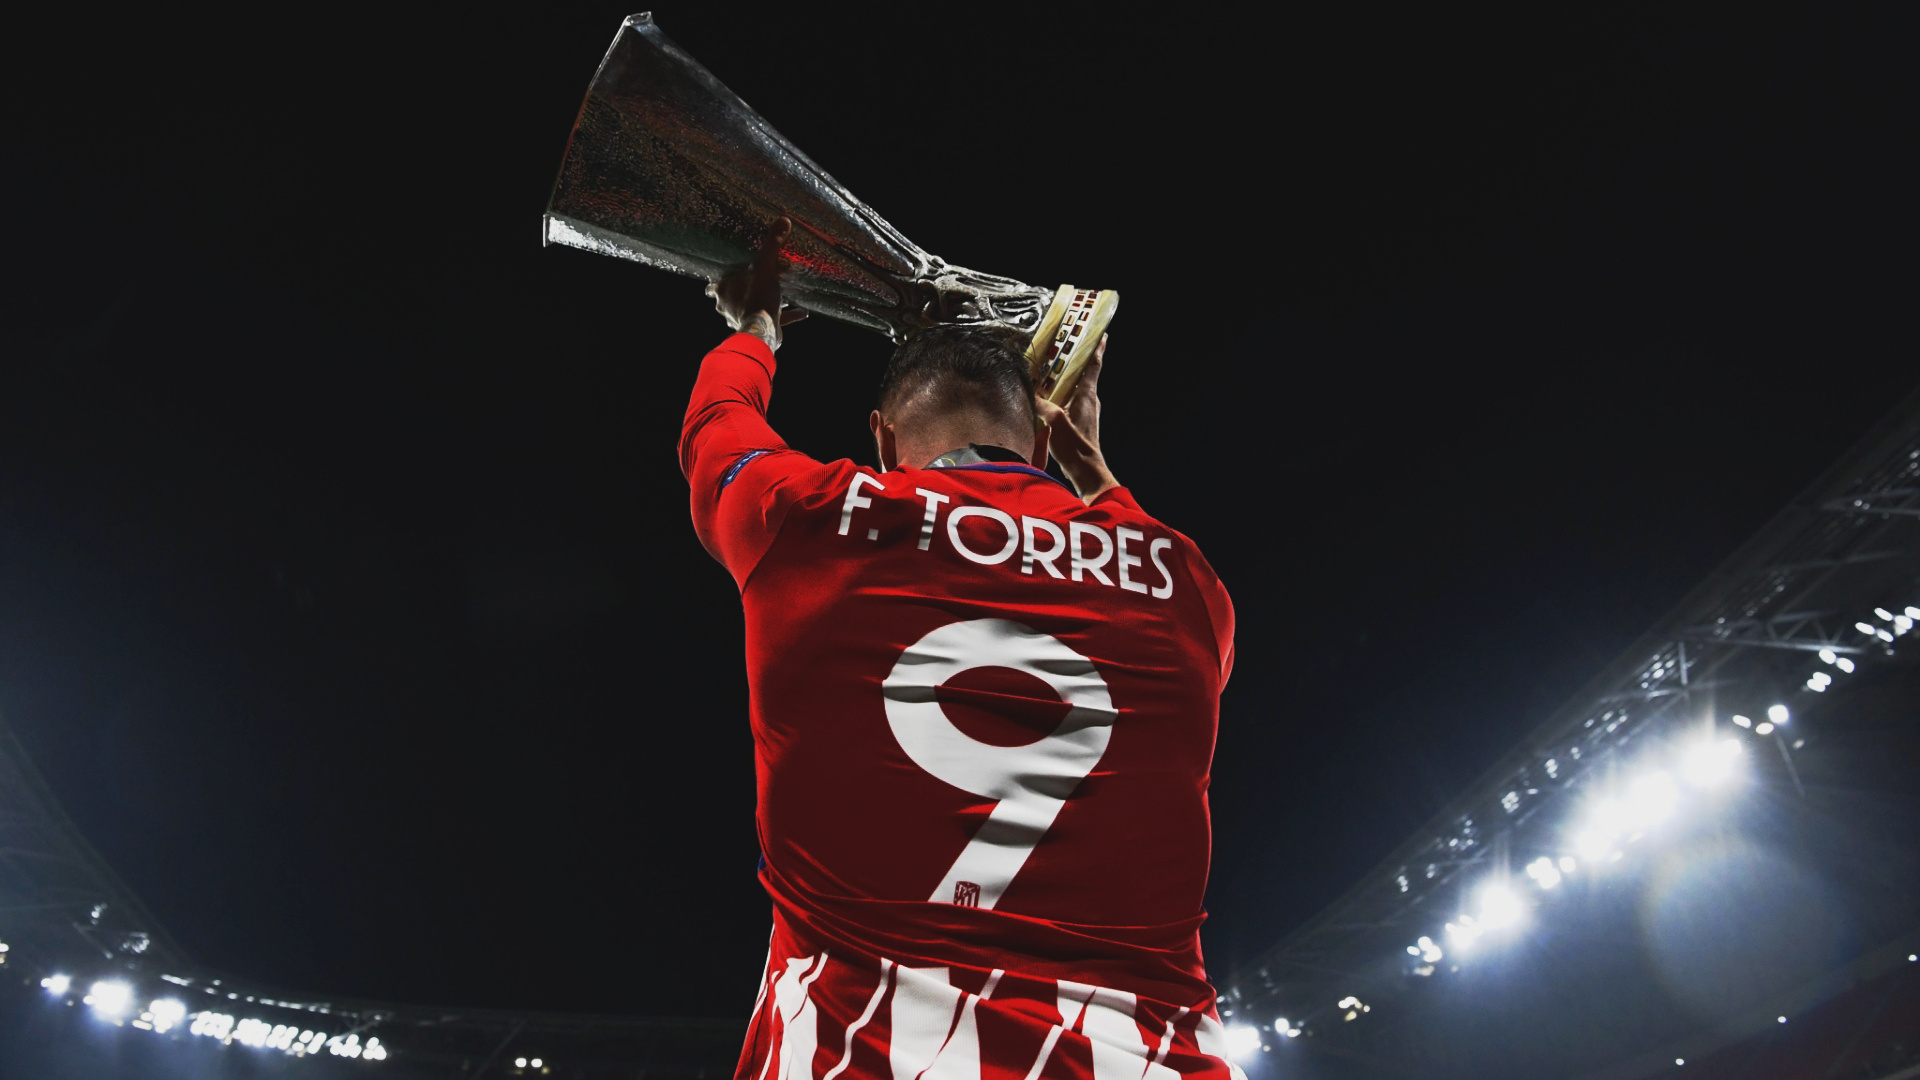 Fernando Torres, Night football, Stadium lights, Football wallpaper, 1920x1080 Full HD Desktop